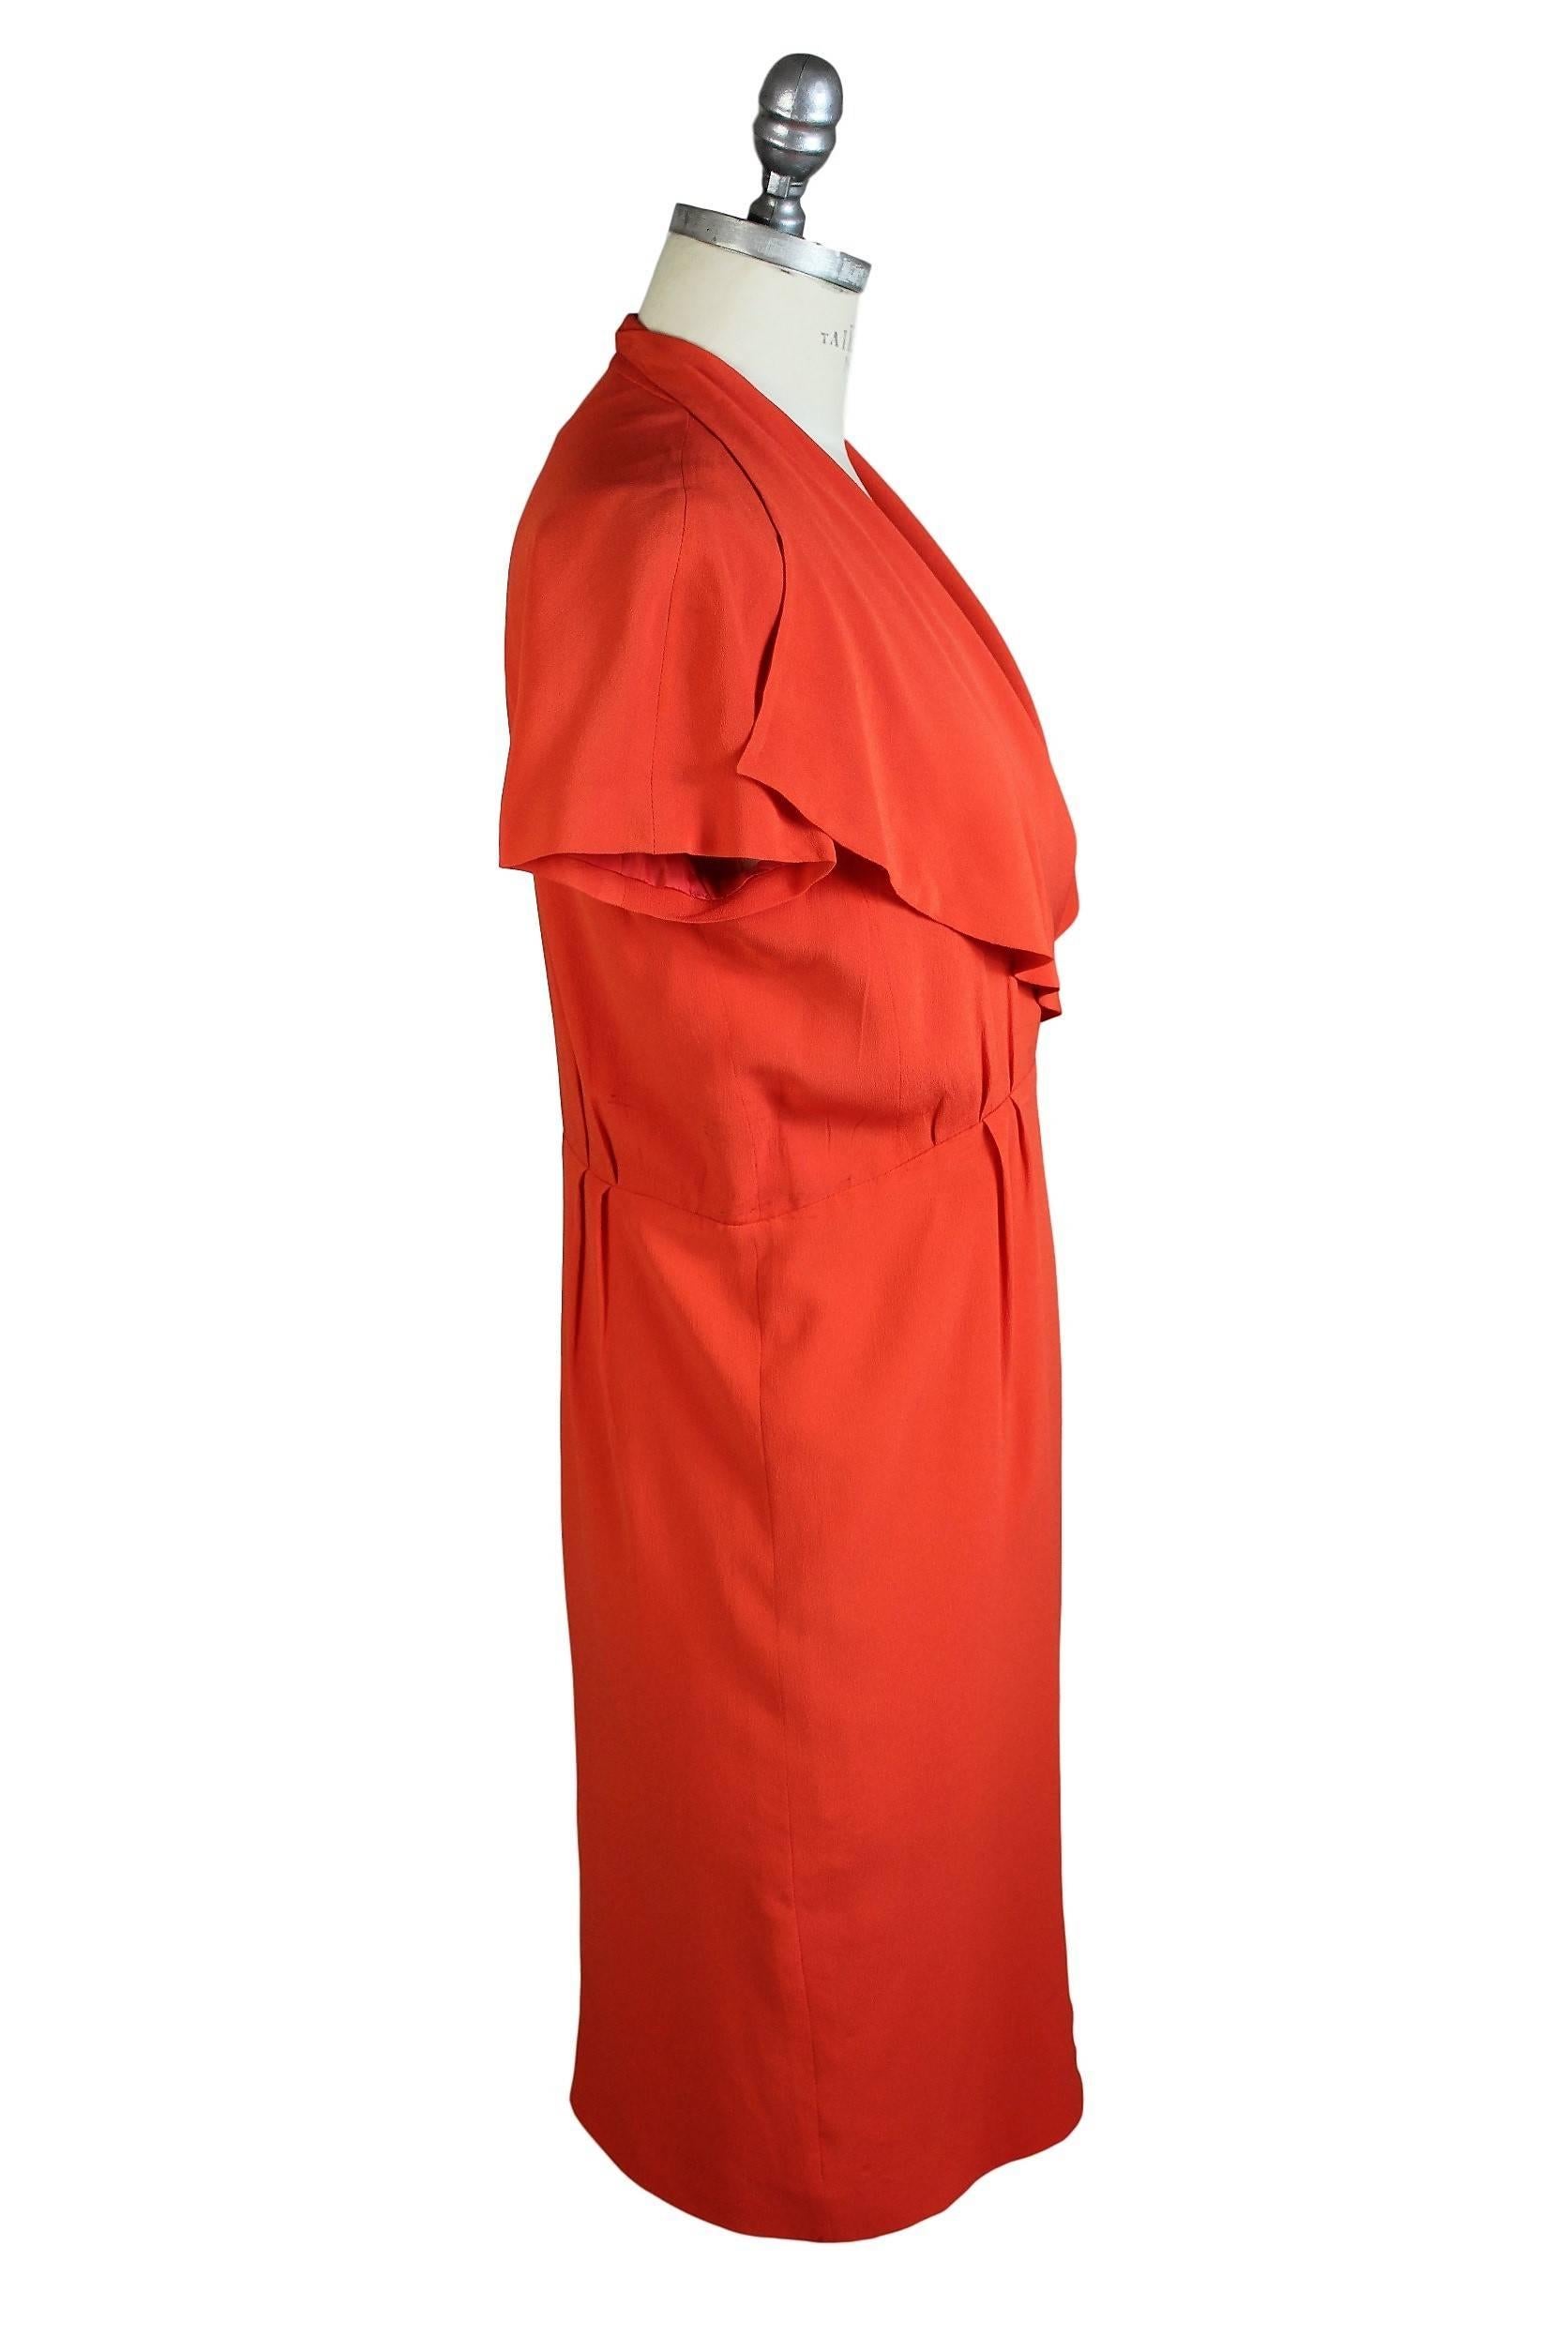 Women's 1980s Fendi Peach Silk Blend Sheath Dress Evening Gown